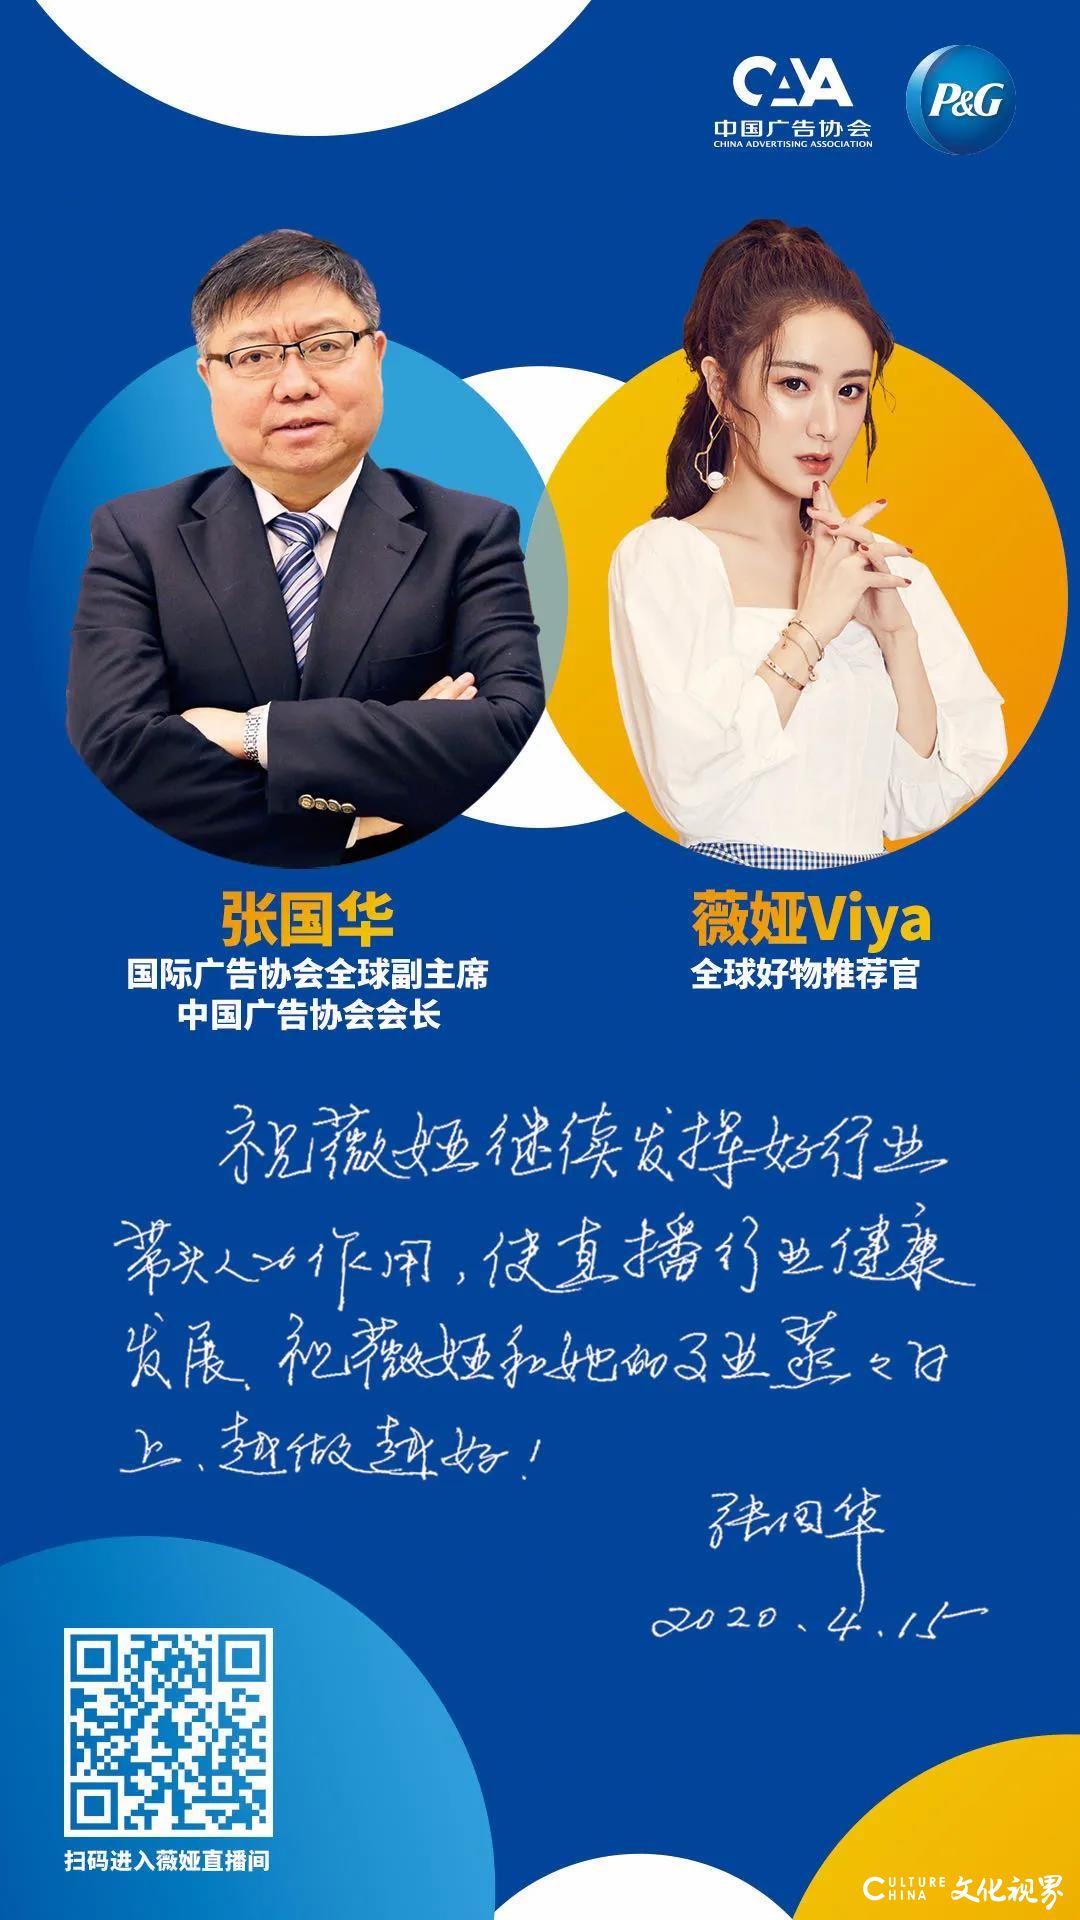 中广协会长张国华出现在“薇娅直播间”，与行业代表人物薇娅共话电商直播健康发展